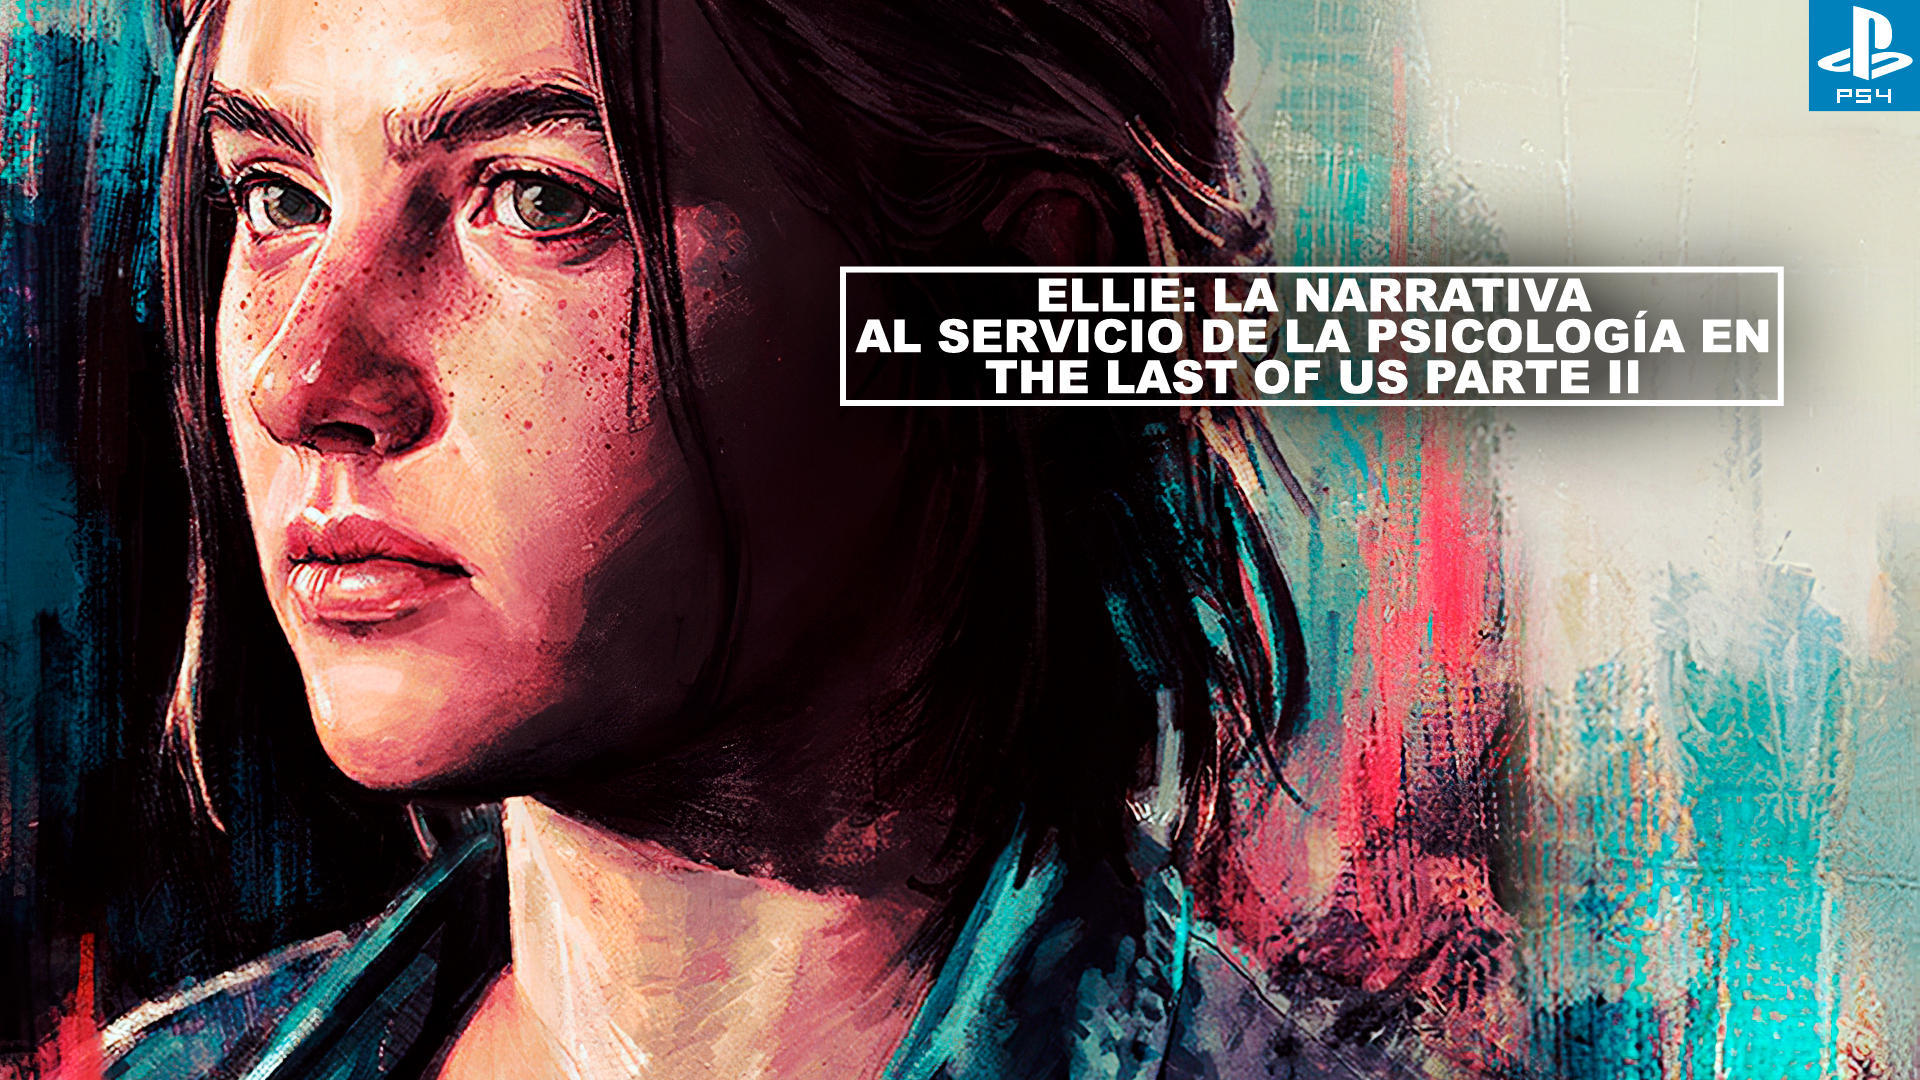 Ellie: la narrativa al servicio de la psicologa en The Last of Us Parte II